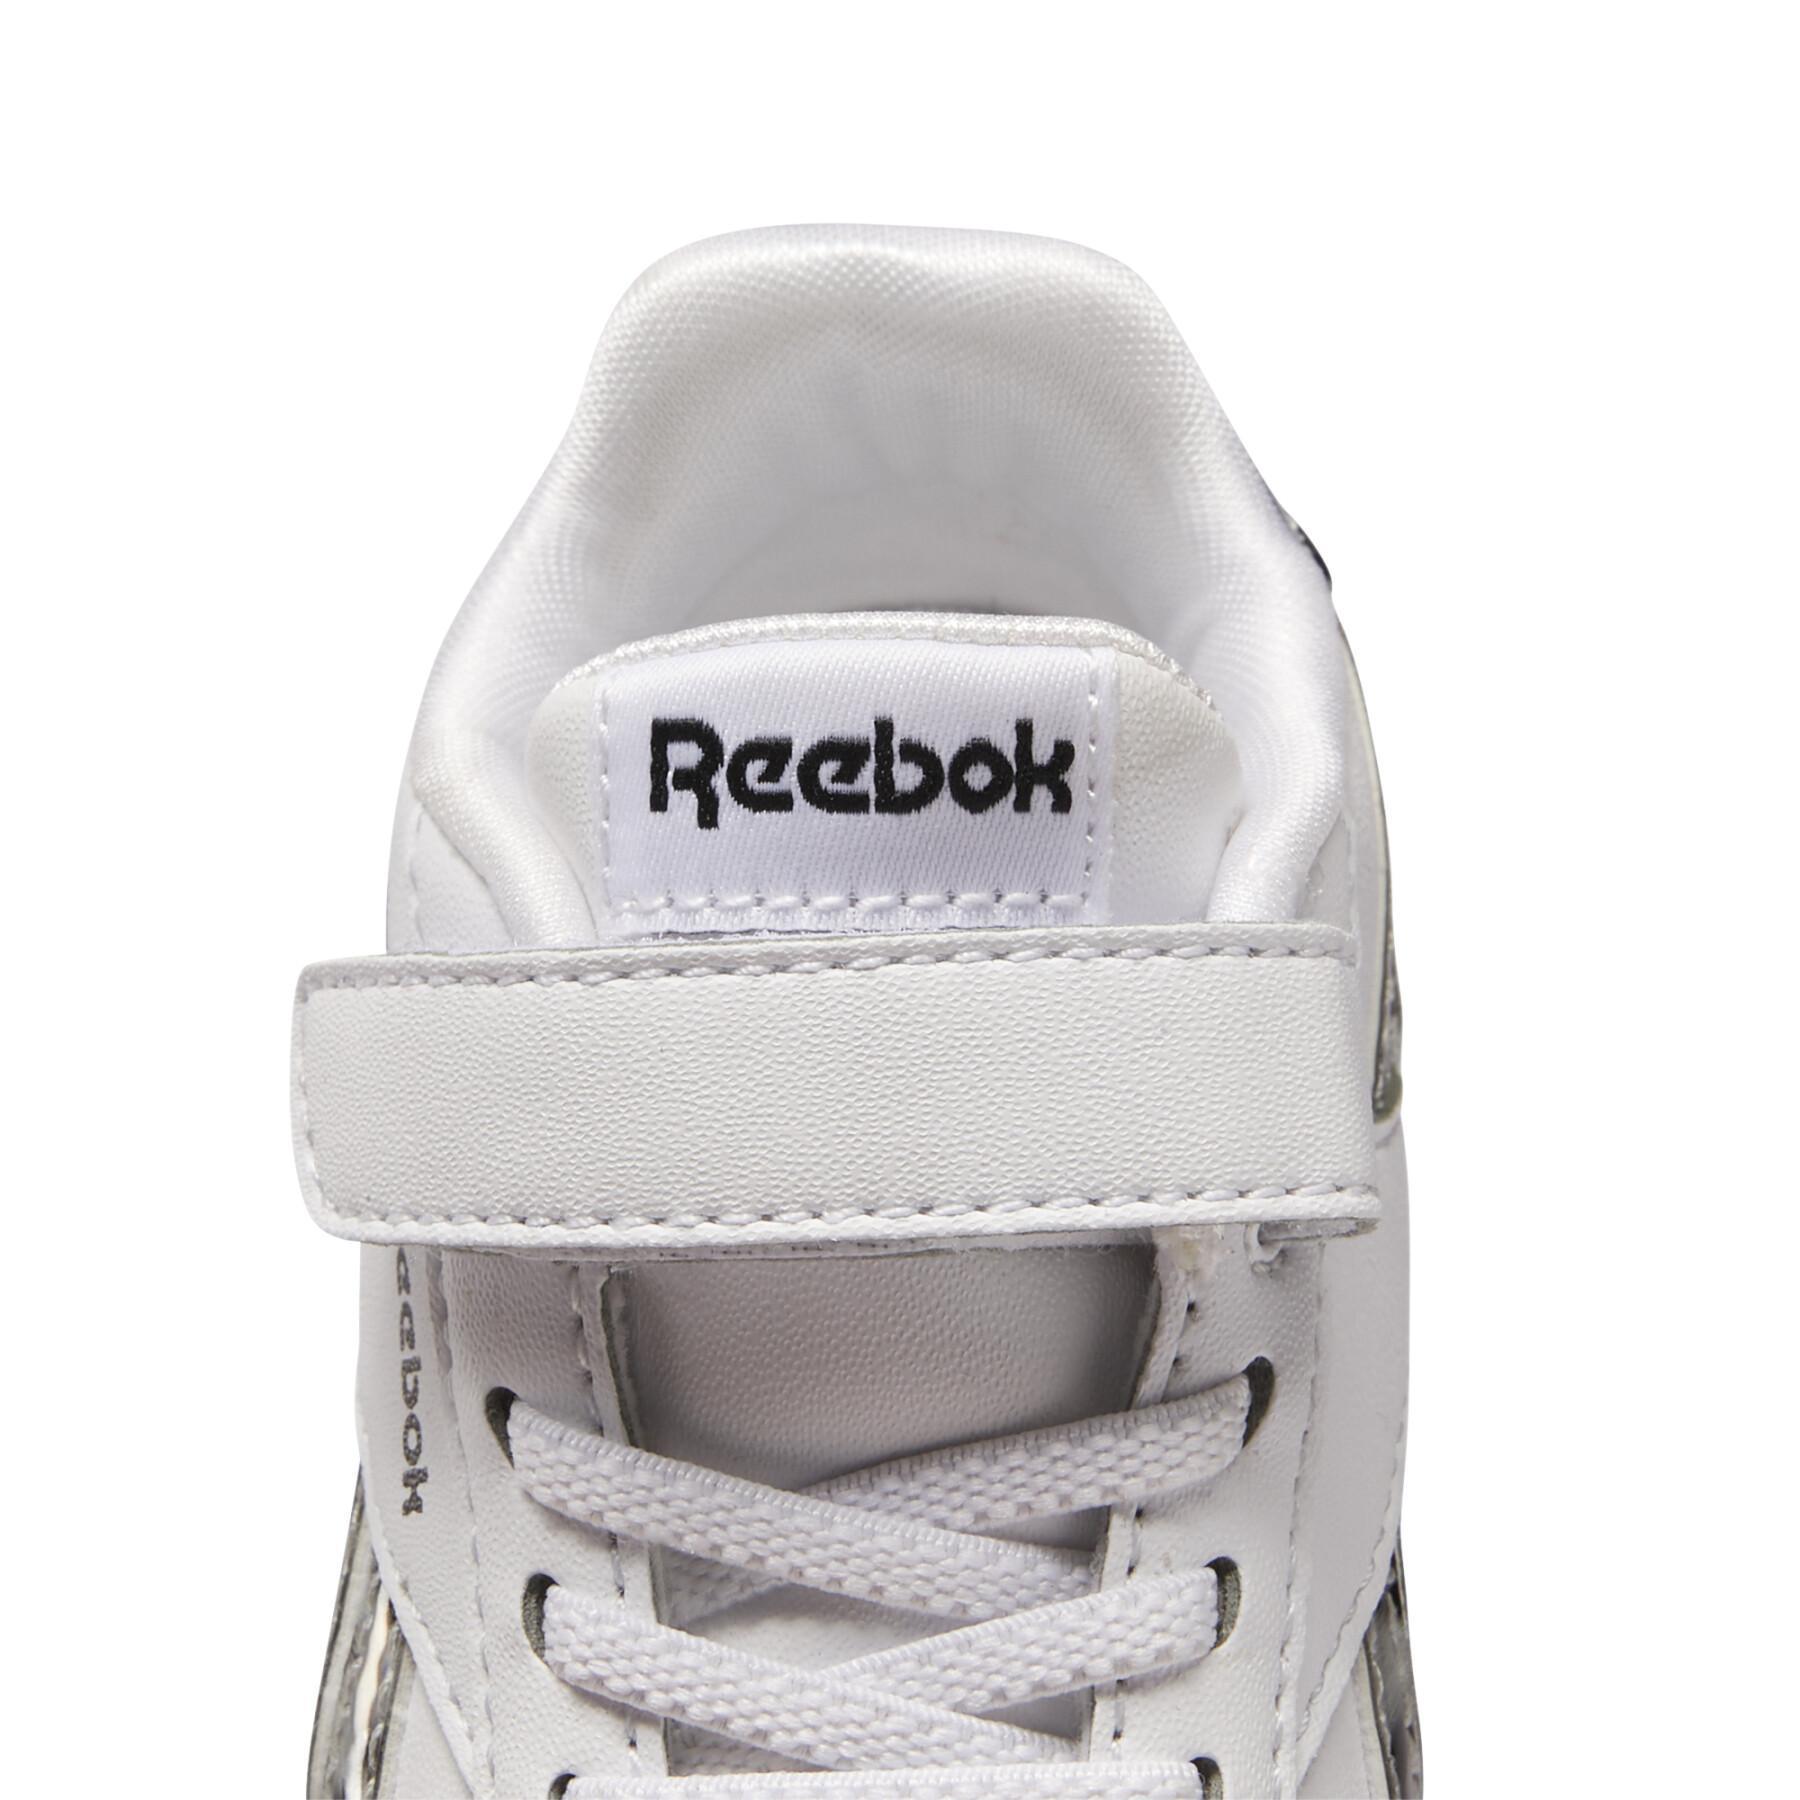 Baby girl shoes Reebok Royal Jogger 3